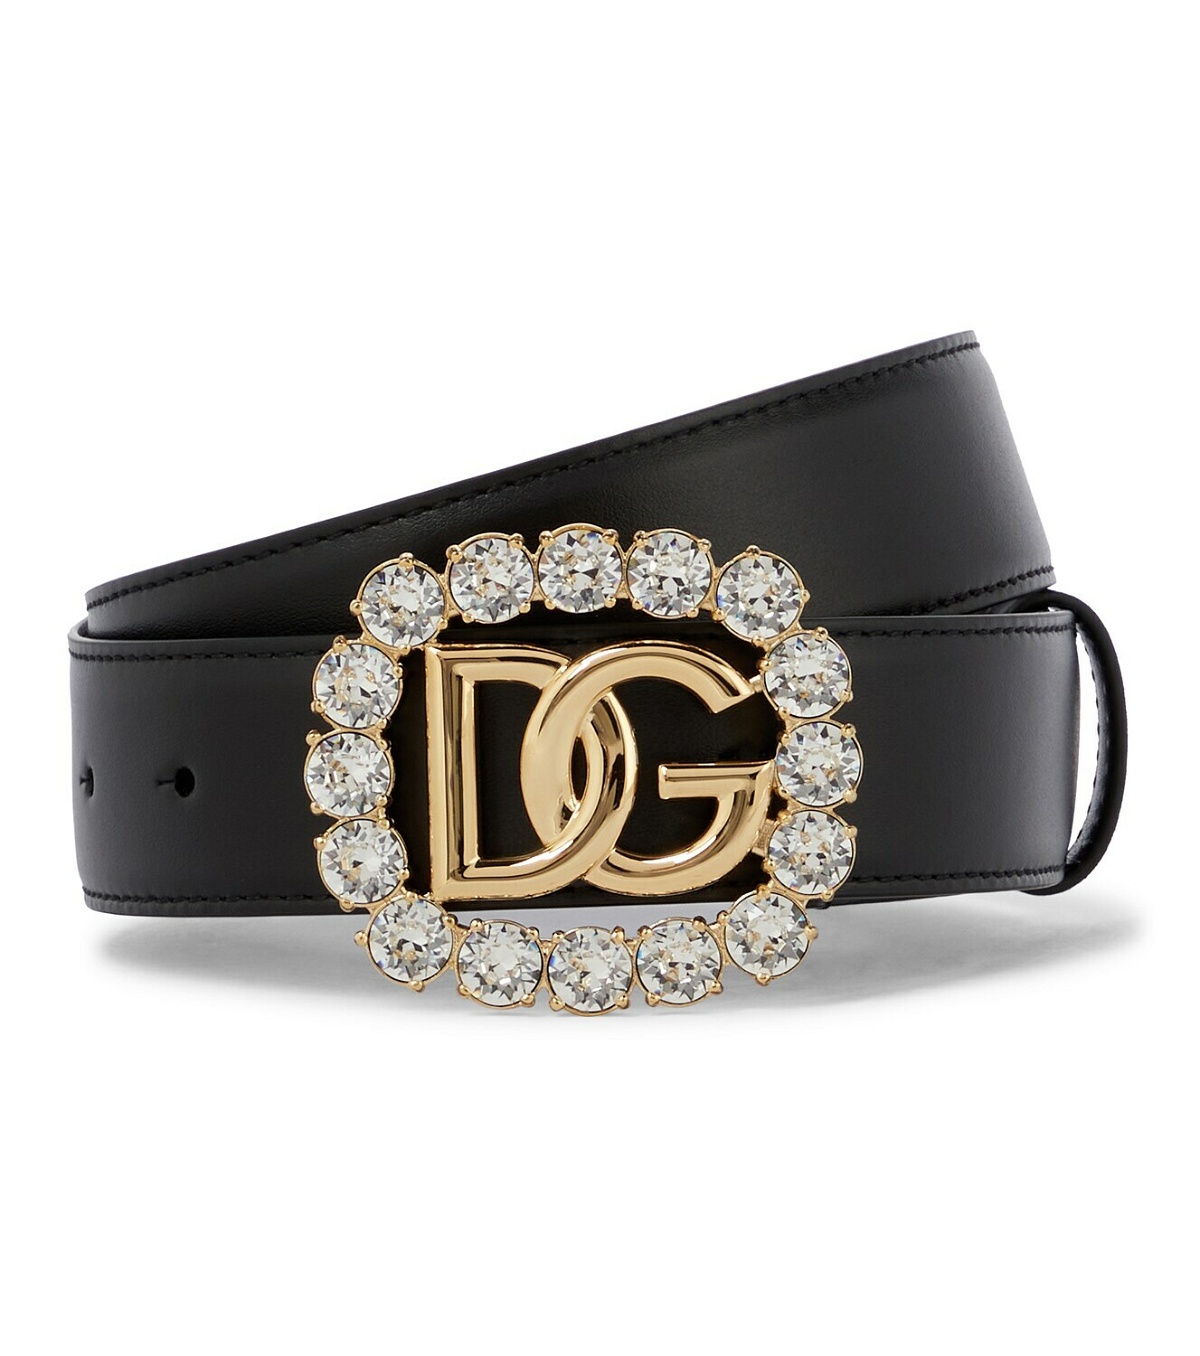 Dolce&Gabbana DG crystal-embellished leather belt Dolce & Gabbana